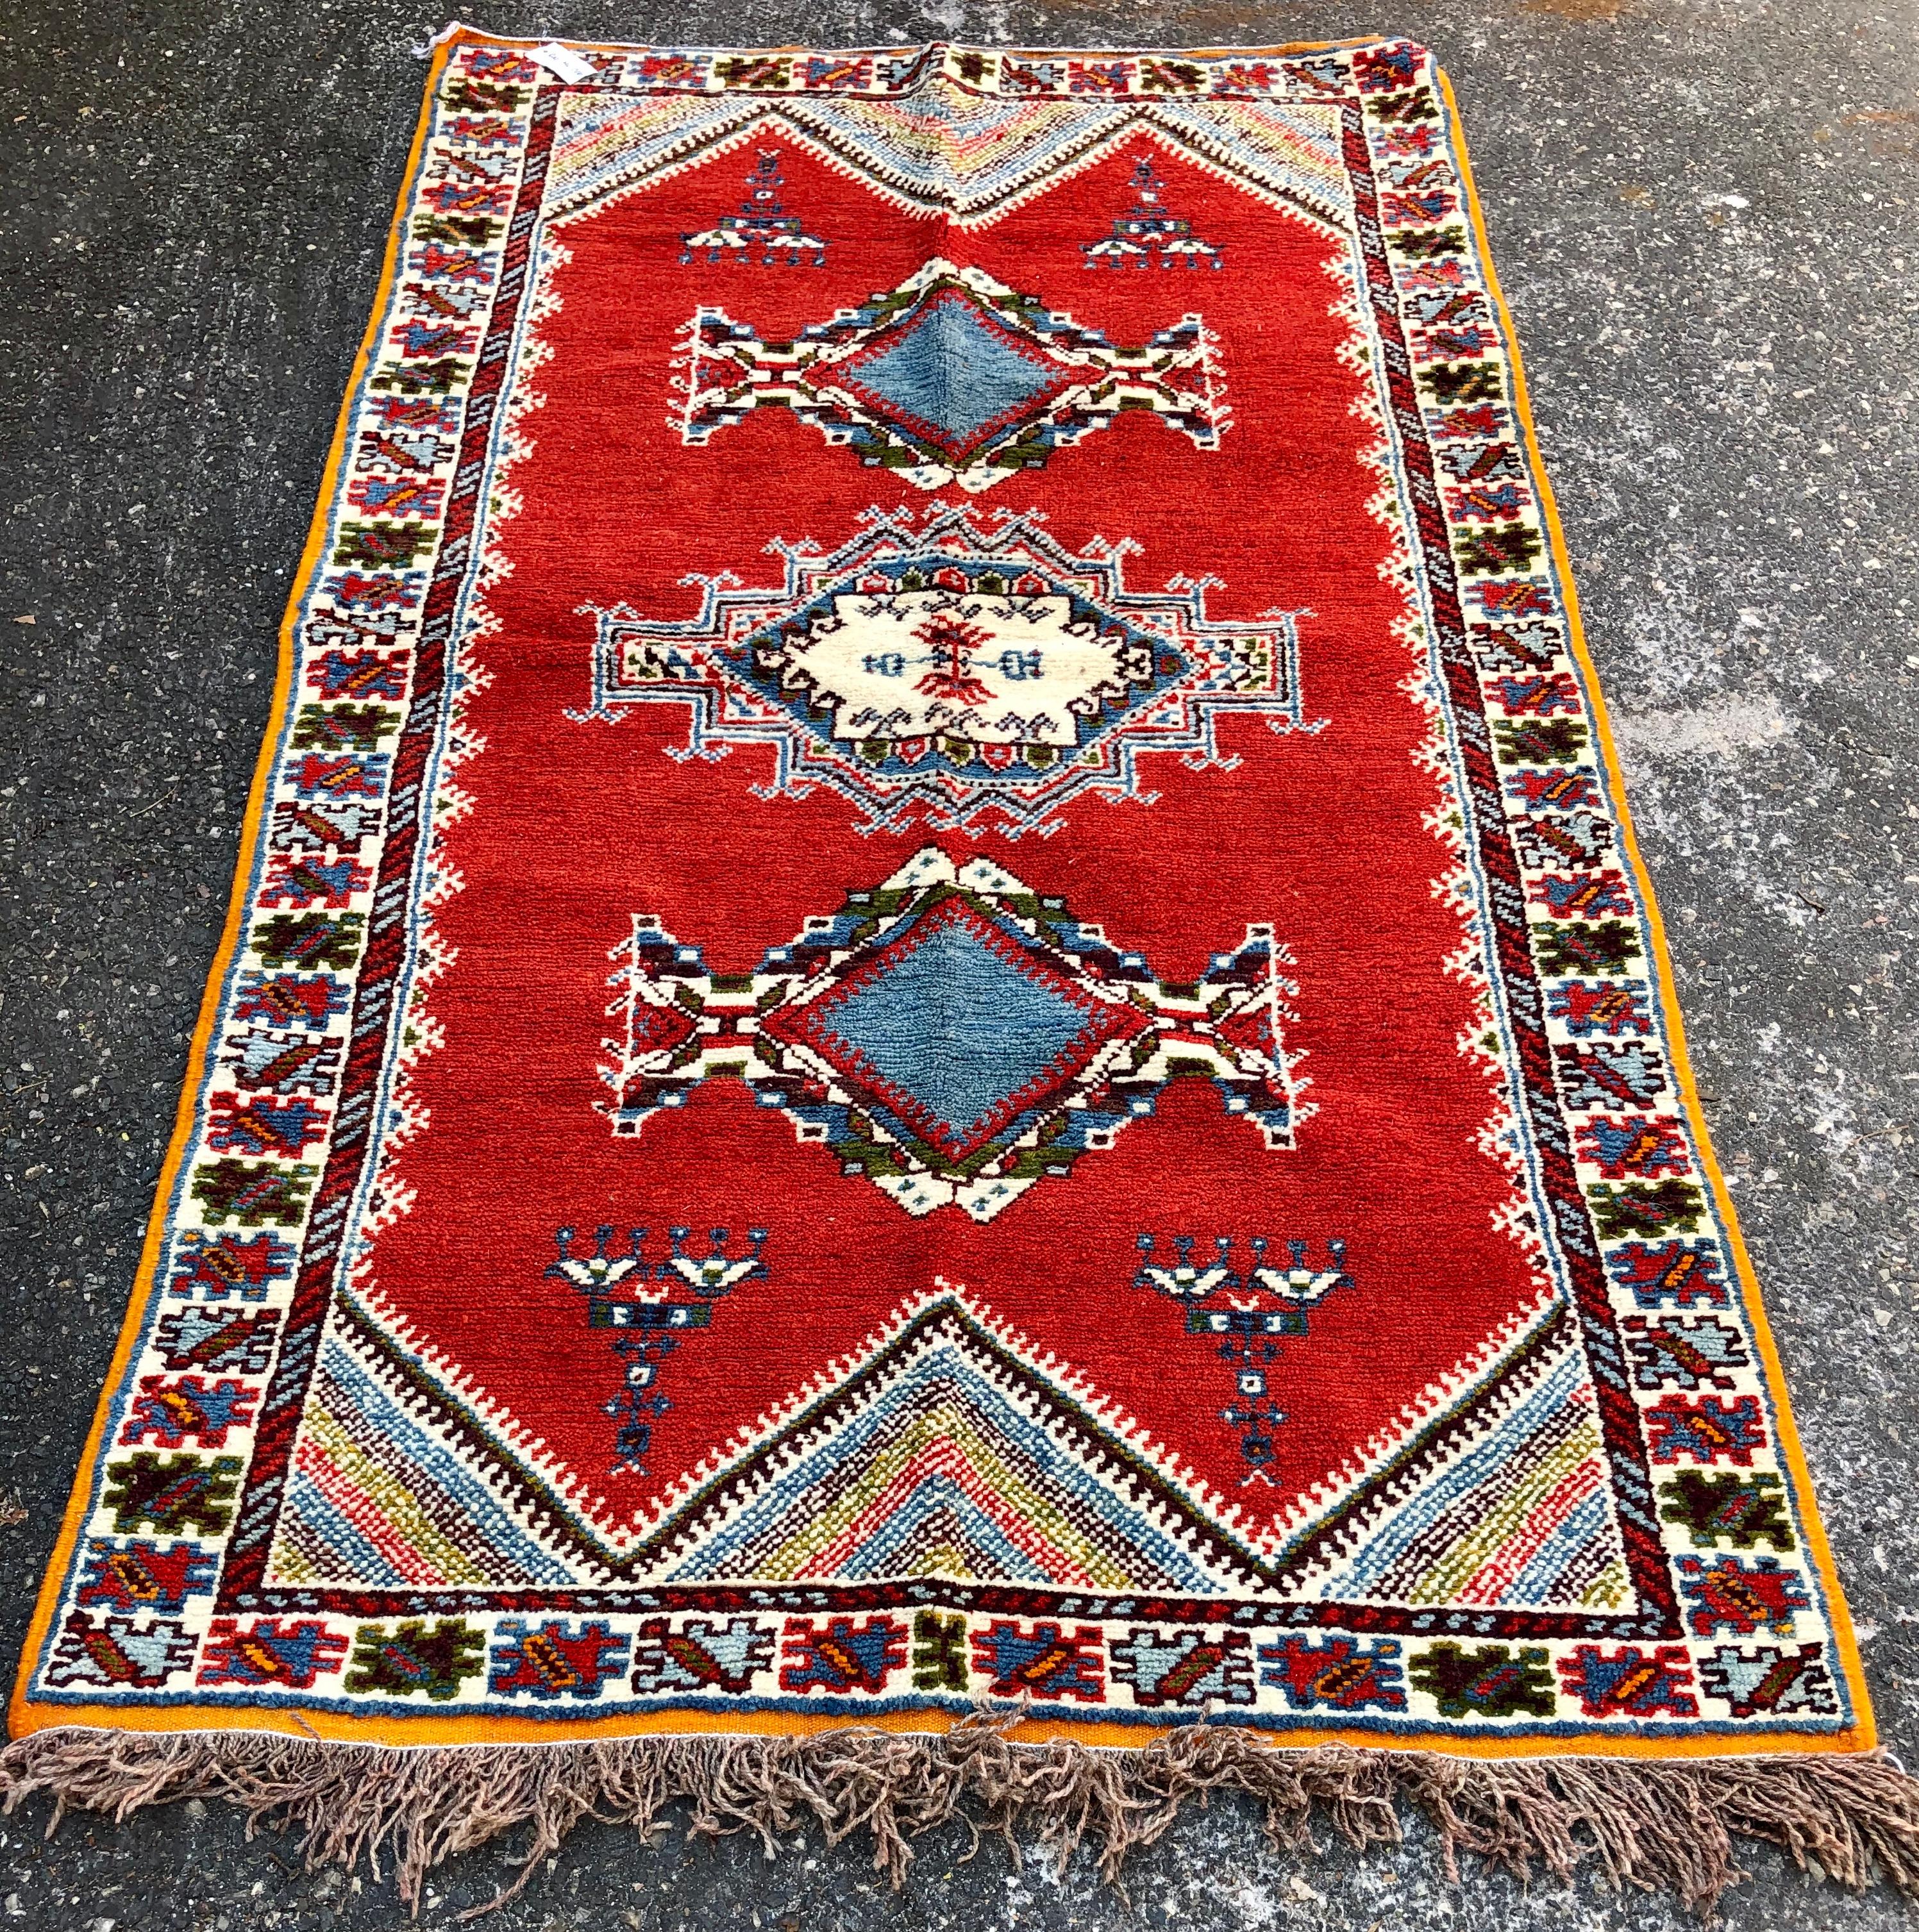 Un tapis en laine tissé à la main, unique en son genre, de style tribal marocain. Le tapis est finement fabriqué à partir de laine de haute qualité d'origine locale et de teintures végétales biologiques. Ce tapis tissé à la main présente des motifs